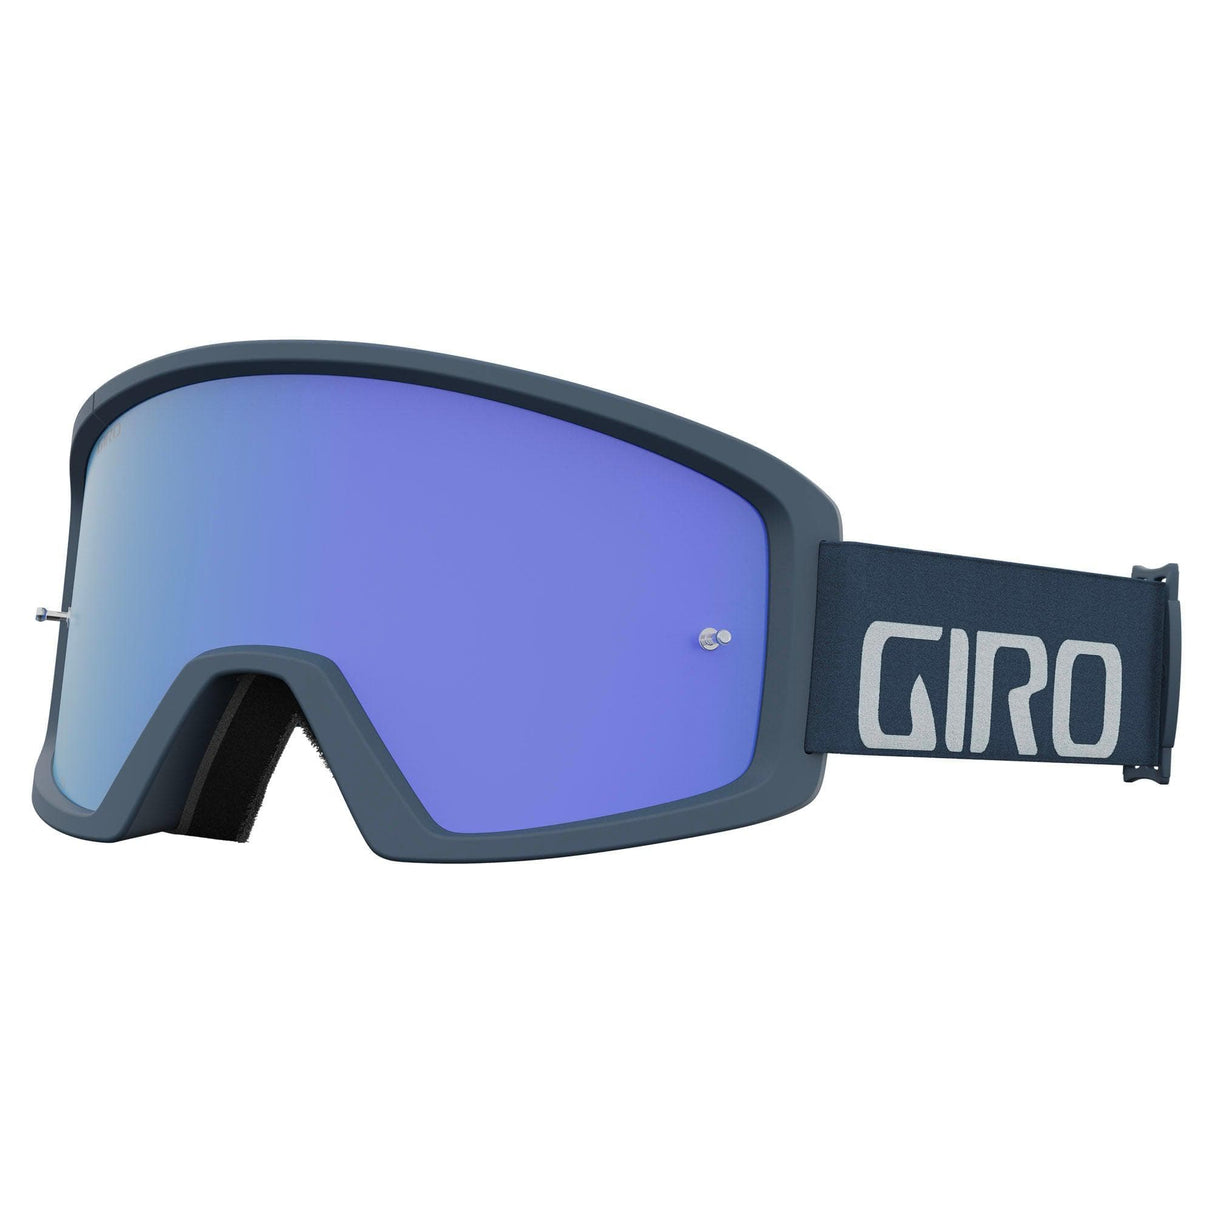 Giro Blok Mtb Goggles 2021: Portaro Grey - Cobalt/Clear Adult